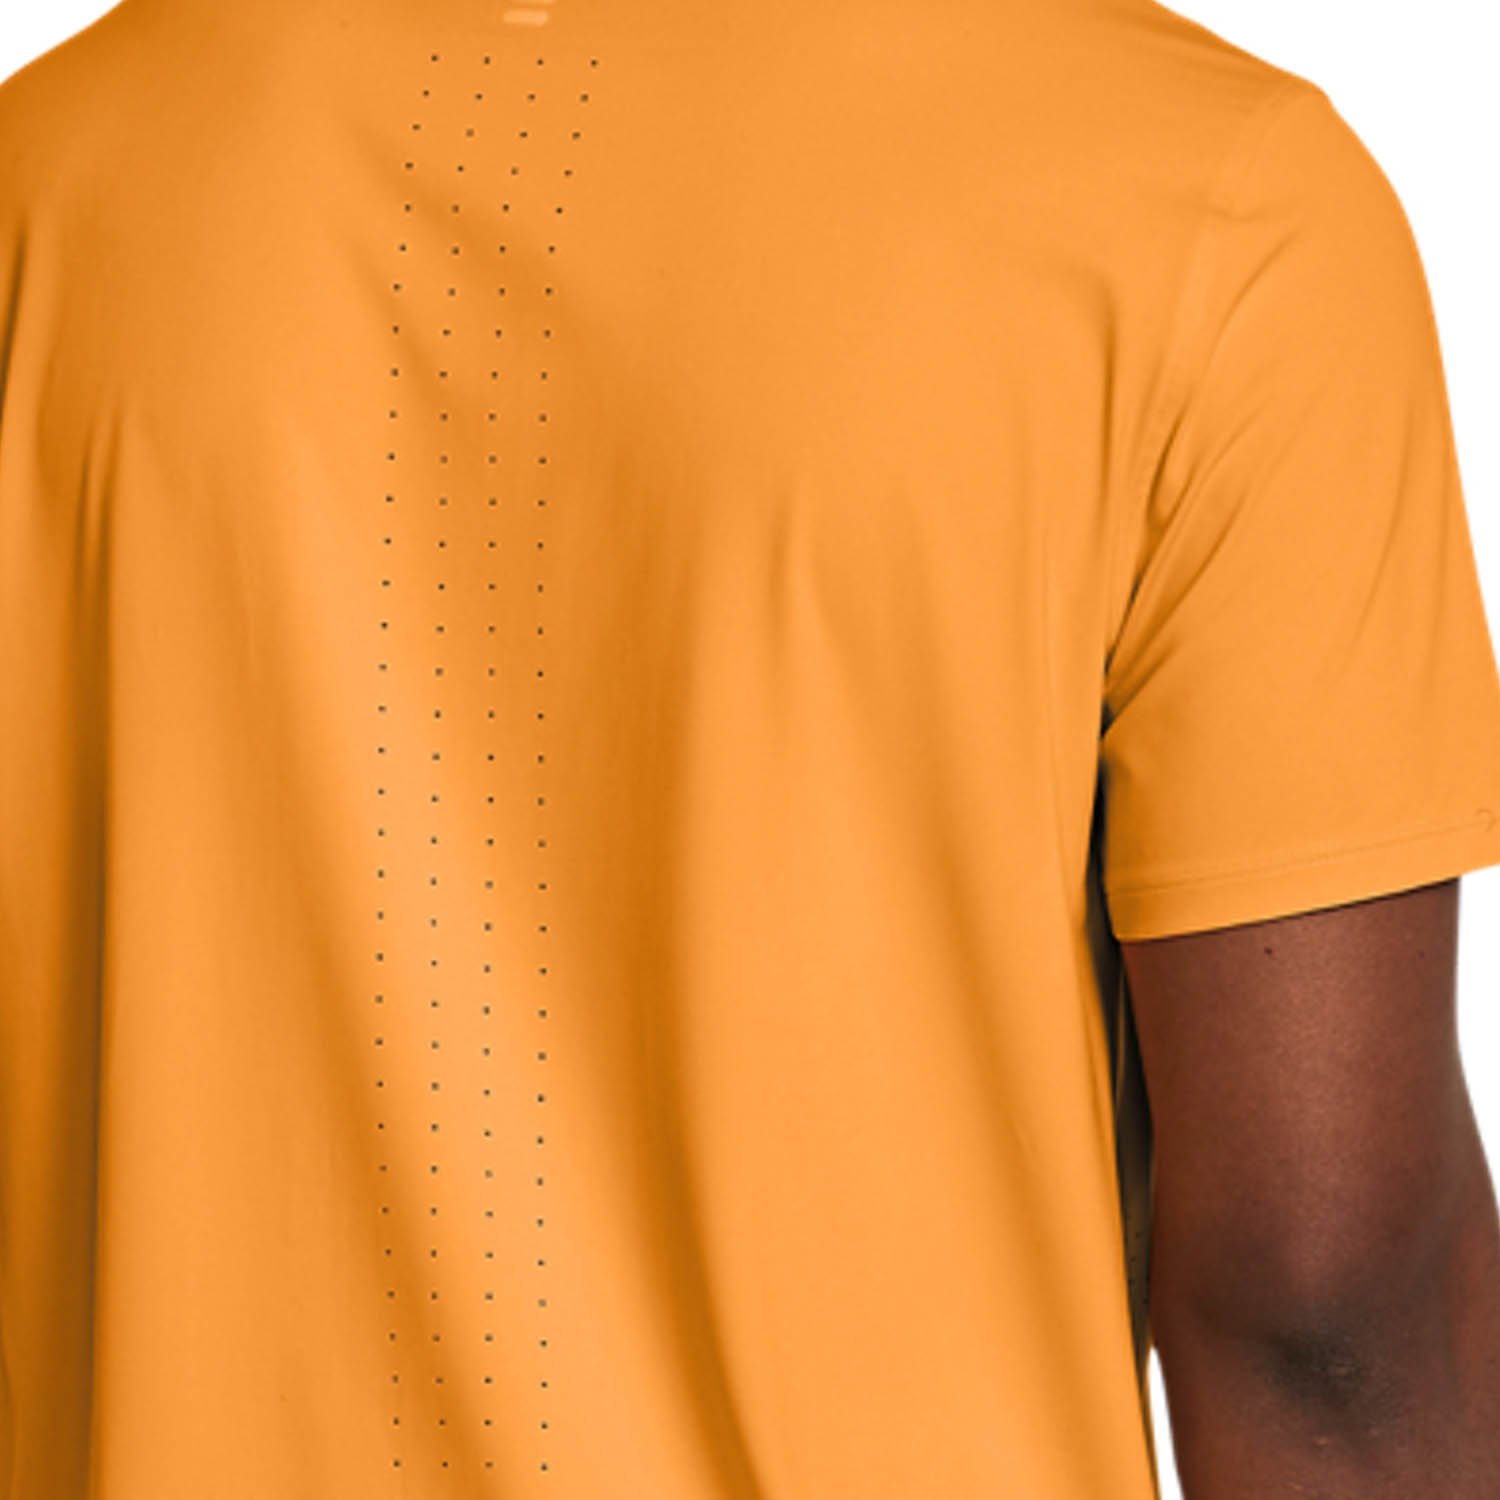 Under Armour Launch Elite T-Shirt - Nova Orange/Reflective